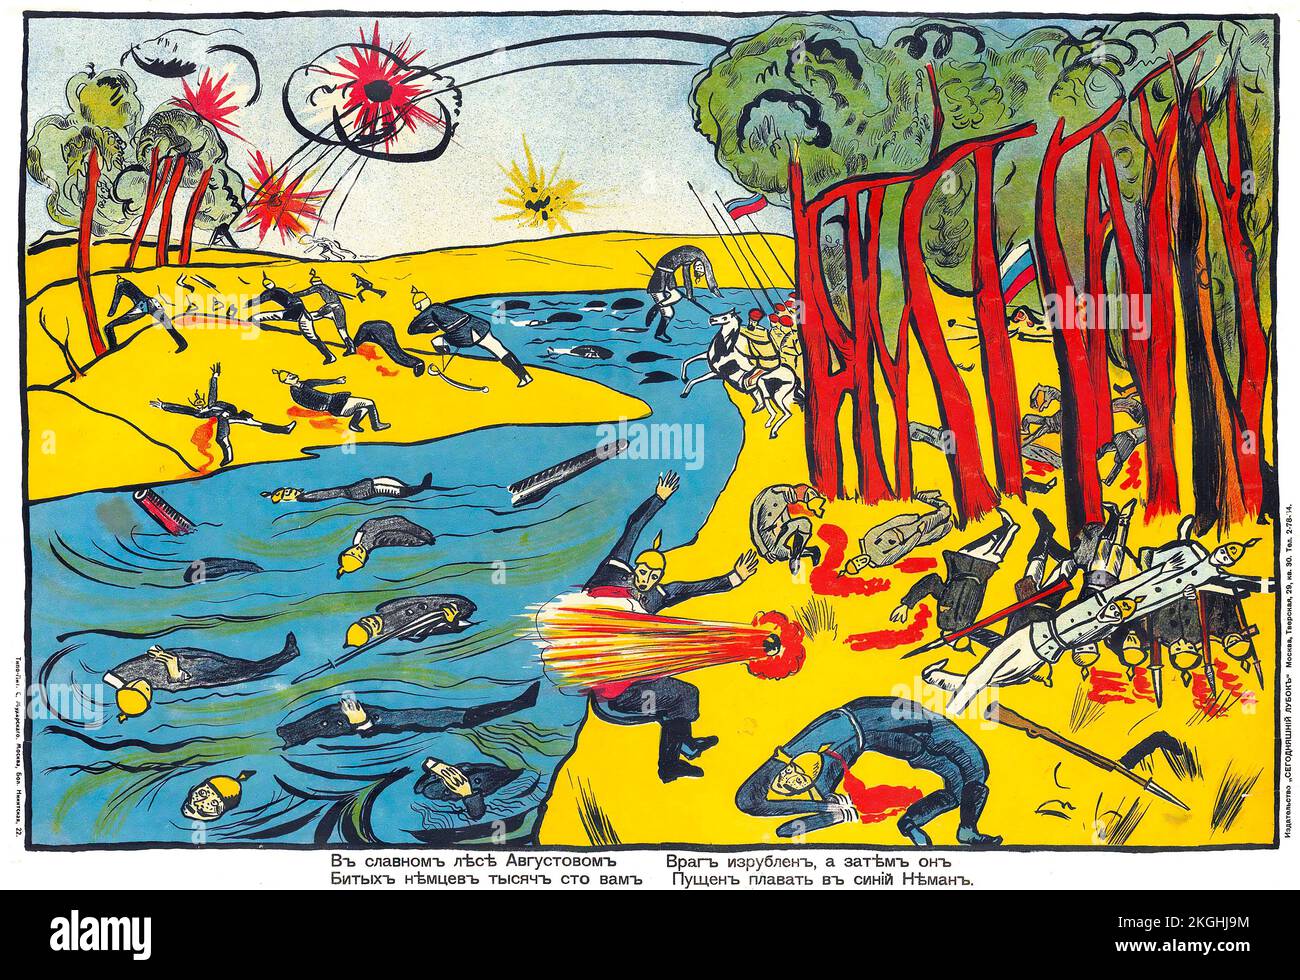 Affiche de guerre russe - artiste inconnu, texte de Vladimir Mayakovsky (1893-1930) dans la magnifique forêt d'Avgustov, 1914 première Guerre mondiale la Grande Guerre Banque D'Images